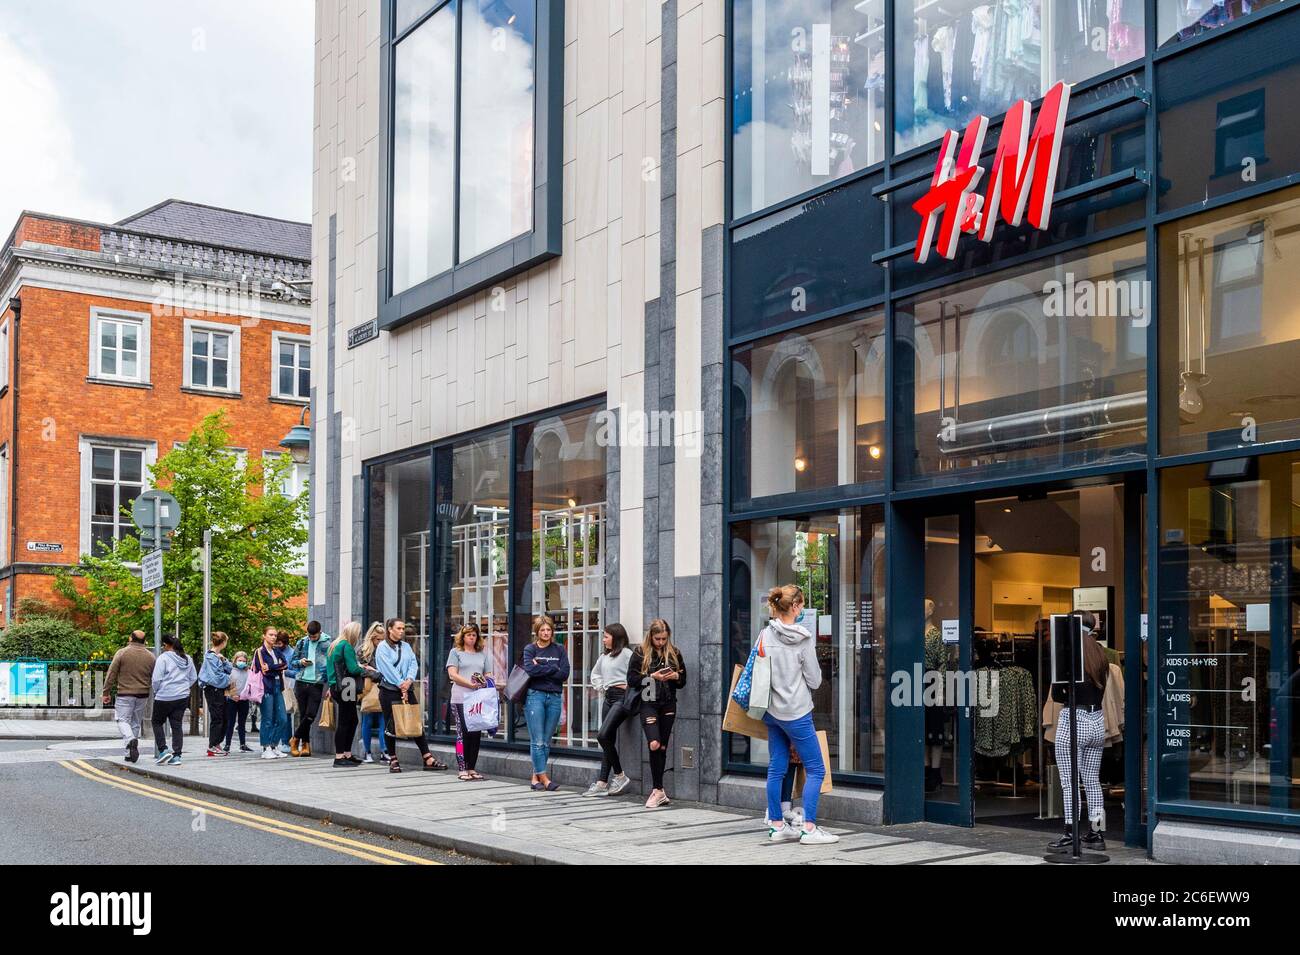 Cork, Irland. Juli 2020. Das H&M-Bekleidungsgeschäft in Opera Lane, Cork City, war heute geöffnet, und eine große Schlange von Käufern wartete darauf, das Geschäft zu betreten. H&M schließt 170 seiner 5000 weltweiten Geschäfte und es ist unklar, ob der Opera Lane-Shop der Axt gegenübersteht. Quelle: AG News/Alamy Live News Stockfoto